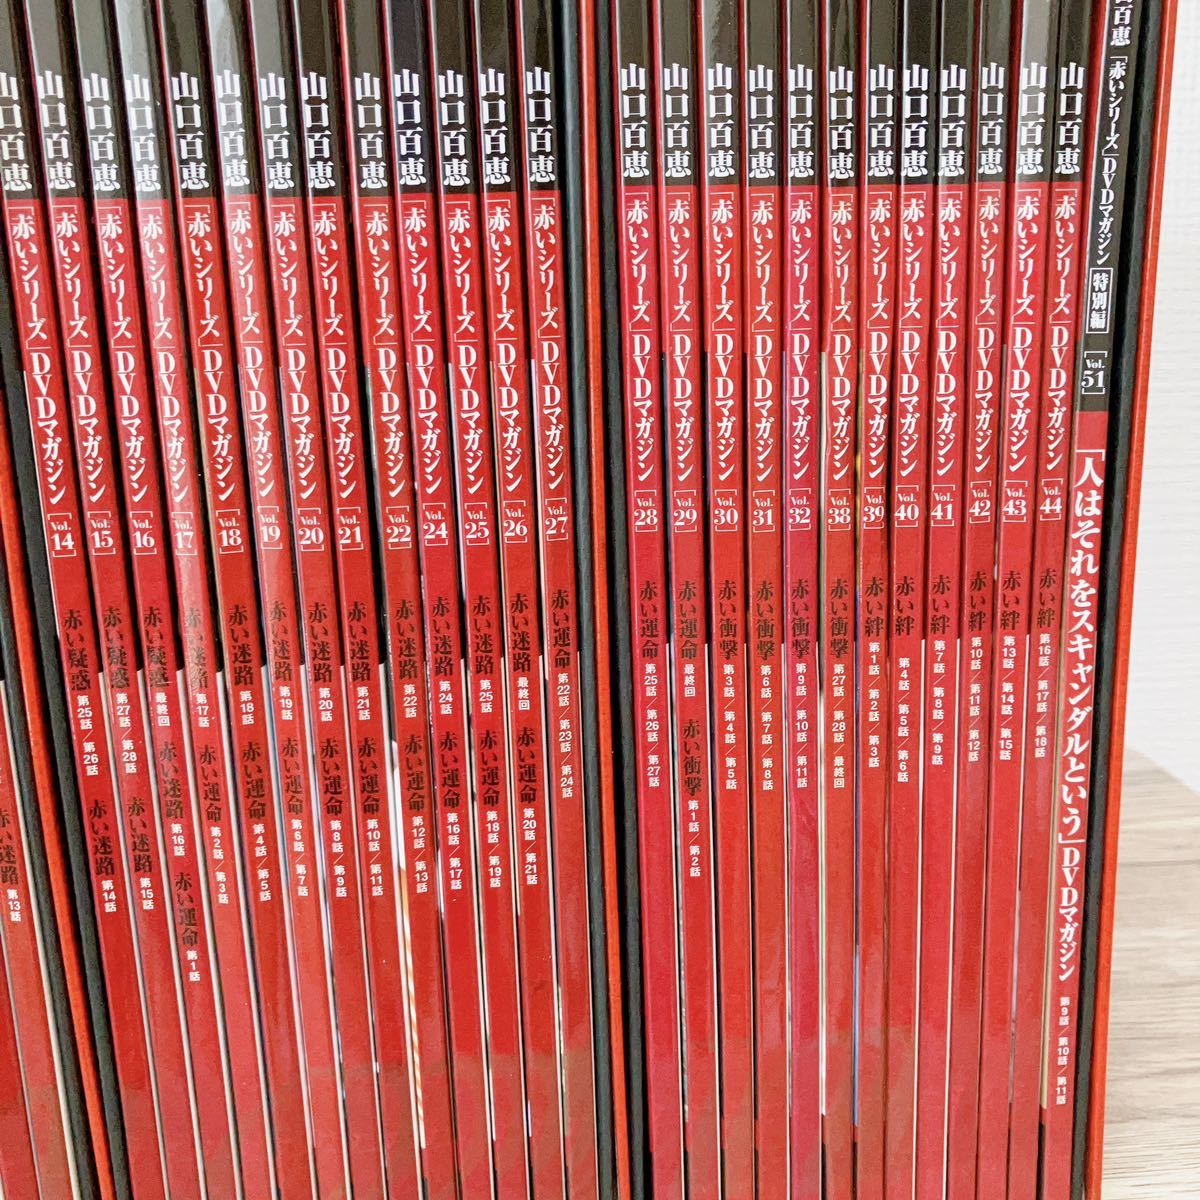  Yamaguchi Momoe [ красная серия ]DVD журнал 39 шт. комплект .. фирма красный .. красный . жизнь красный лабиринт красный удар красный .